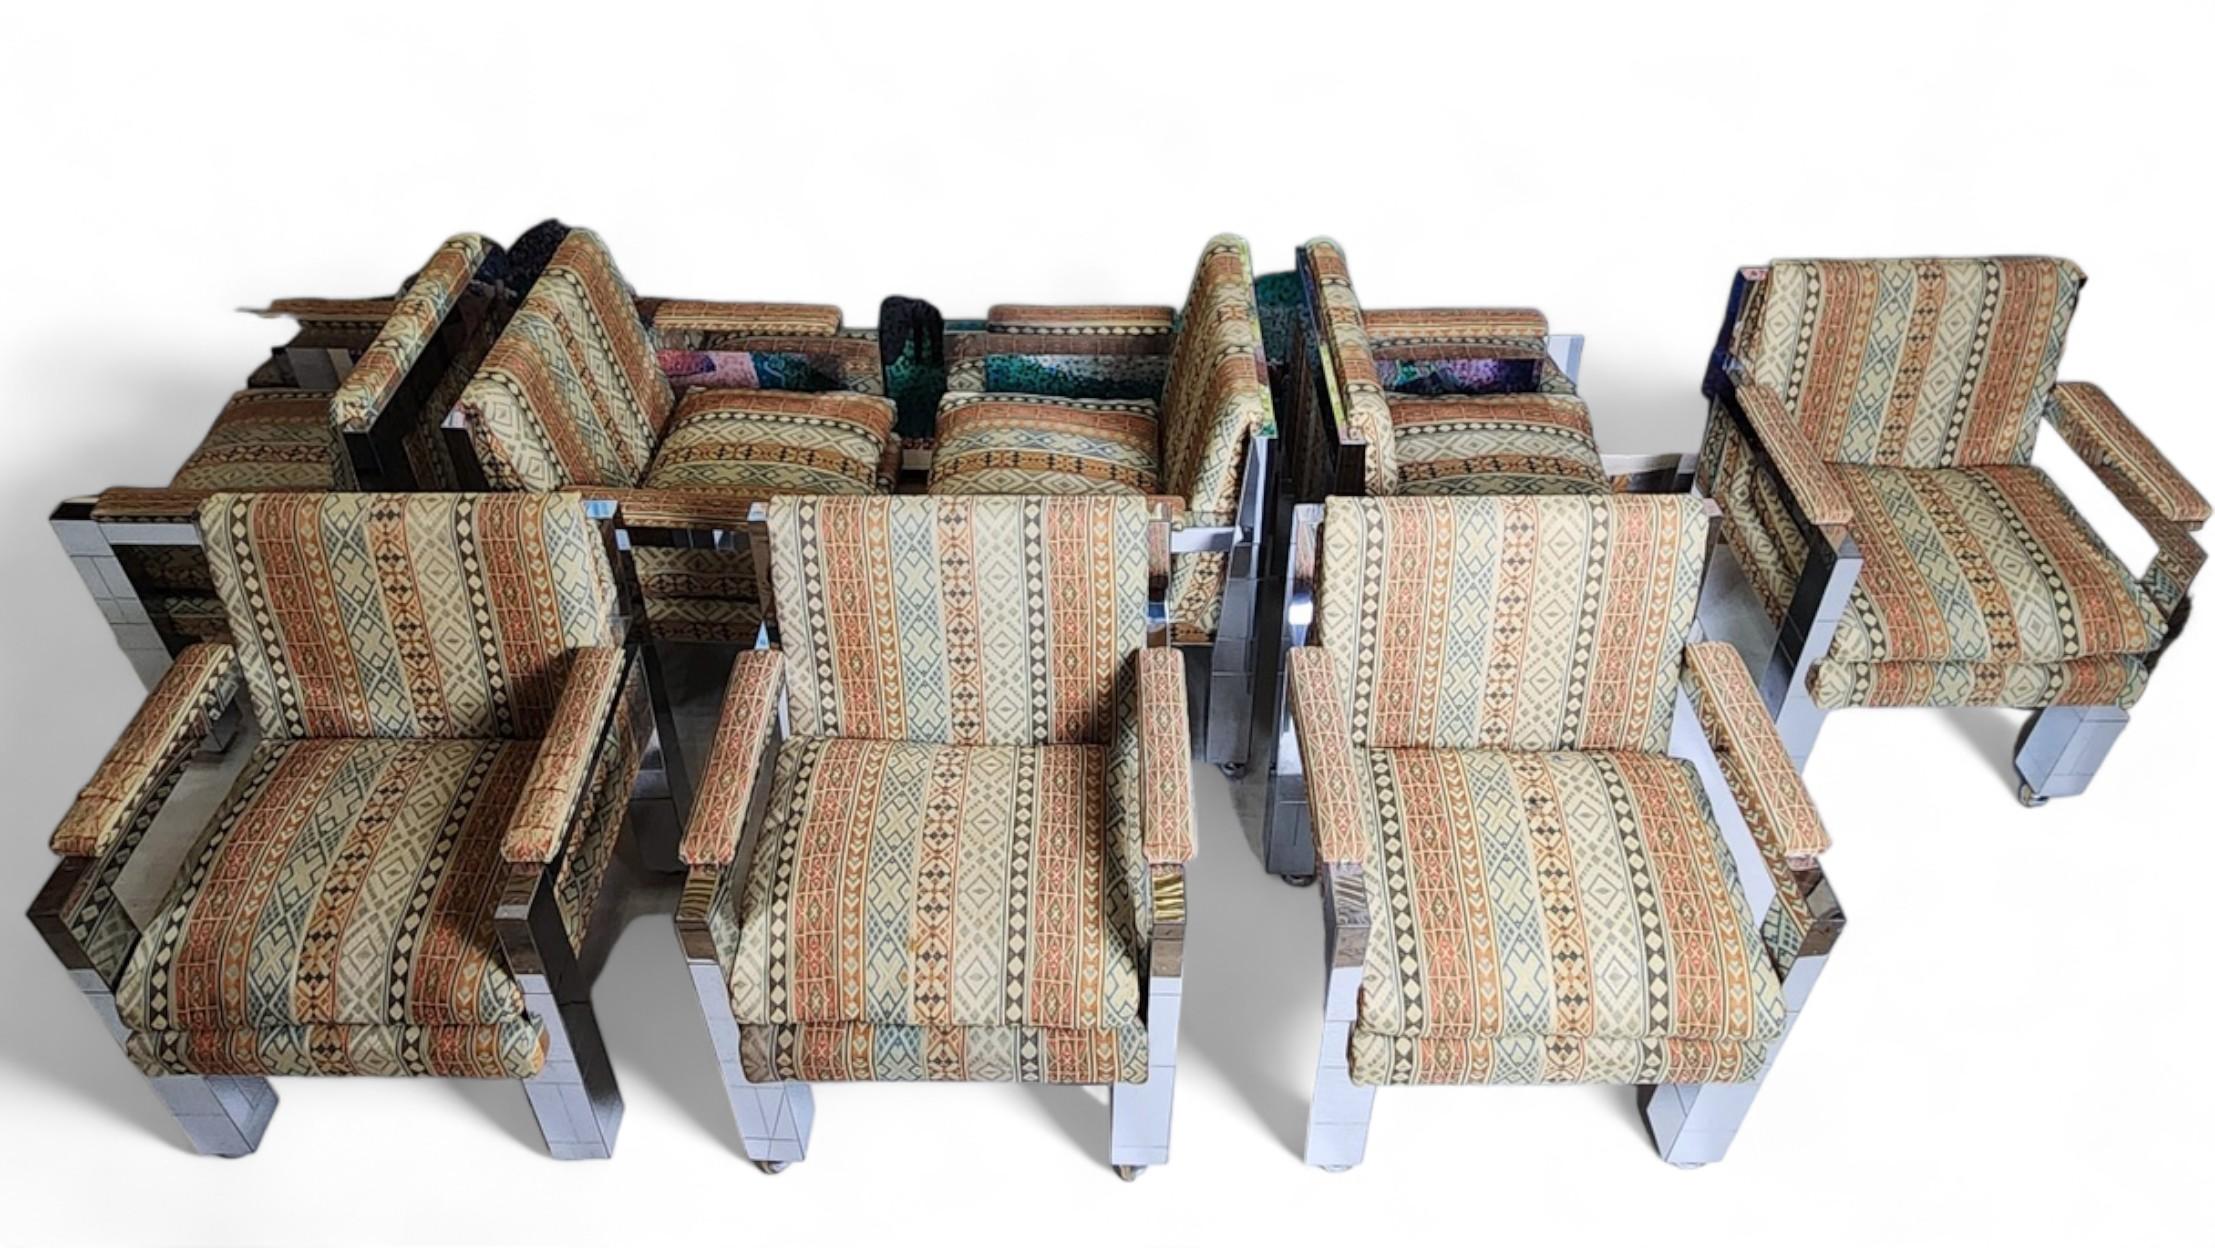 Un ensemble original de huit fauteuils chromés uniques sur sous-verre de Paul Evans, datant de 60 ans, produit au Studio Paul Evans et conçu dans le cadre d'une vaste commande pour la maison d'amis personnels.
La sellerie est d'origine comme le